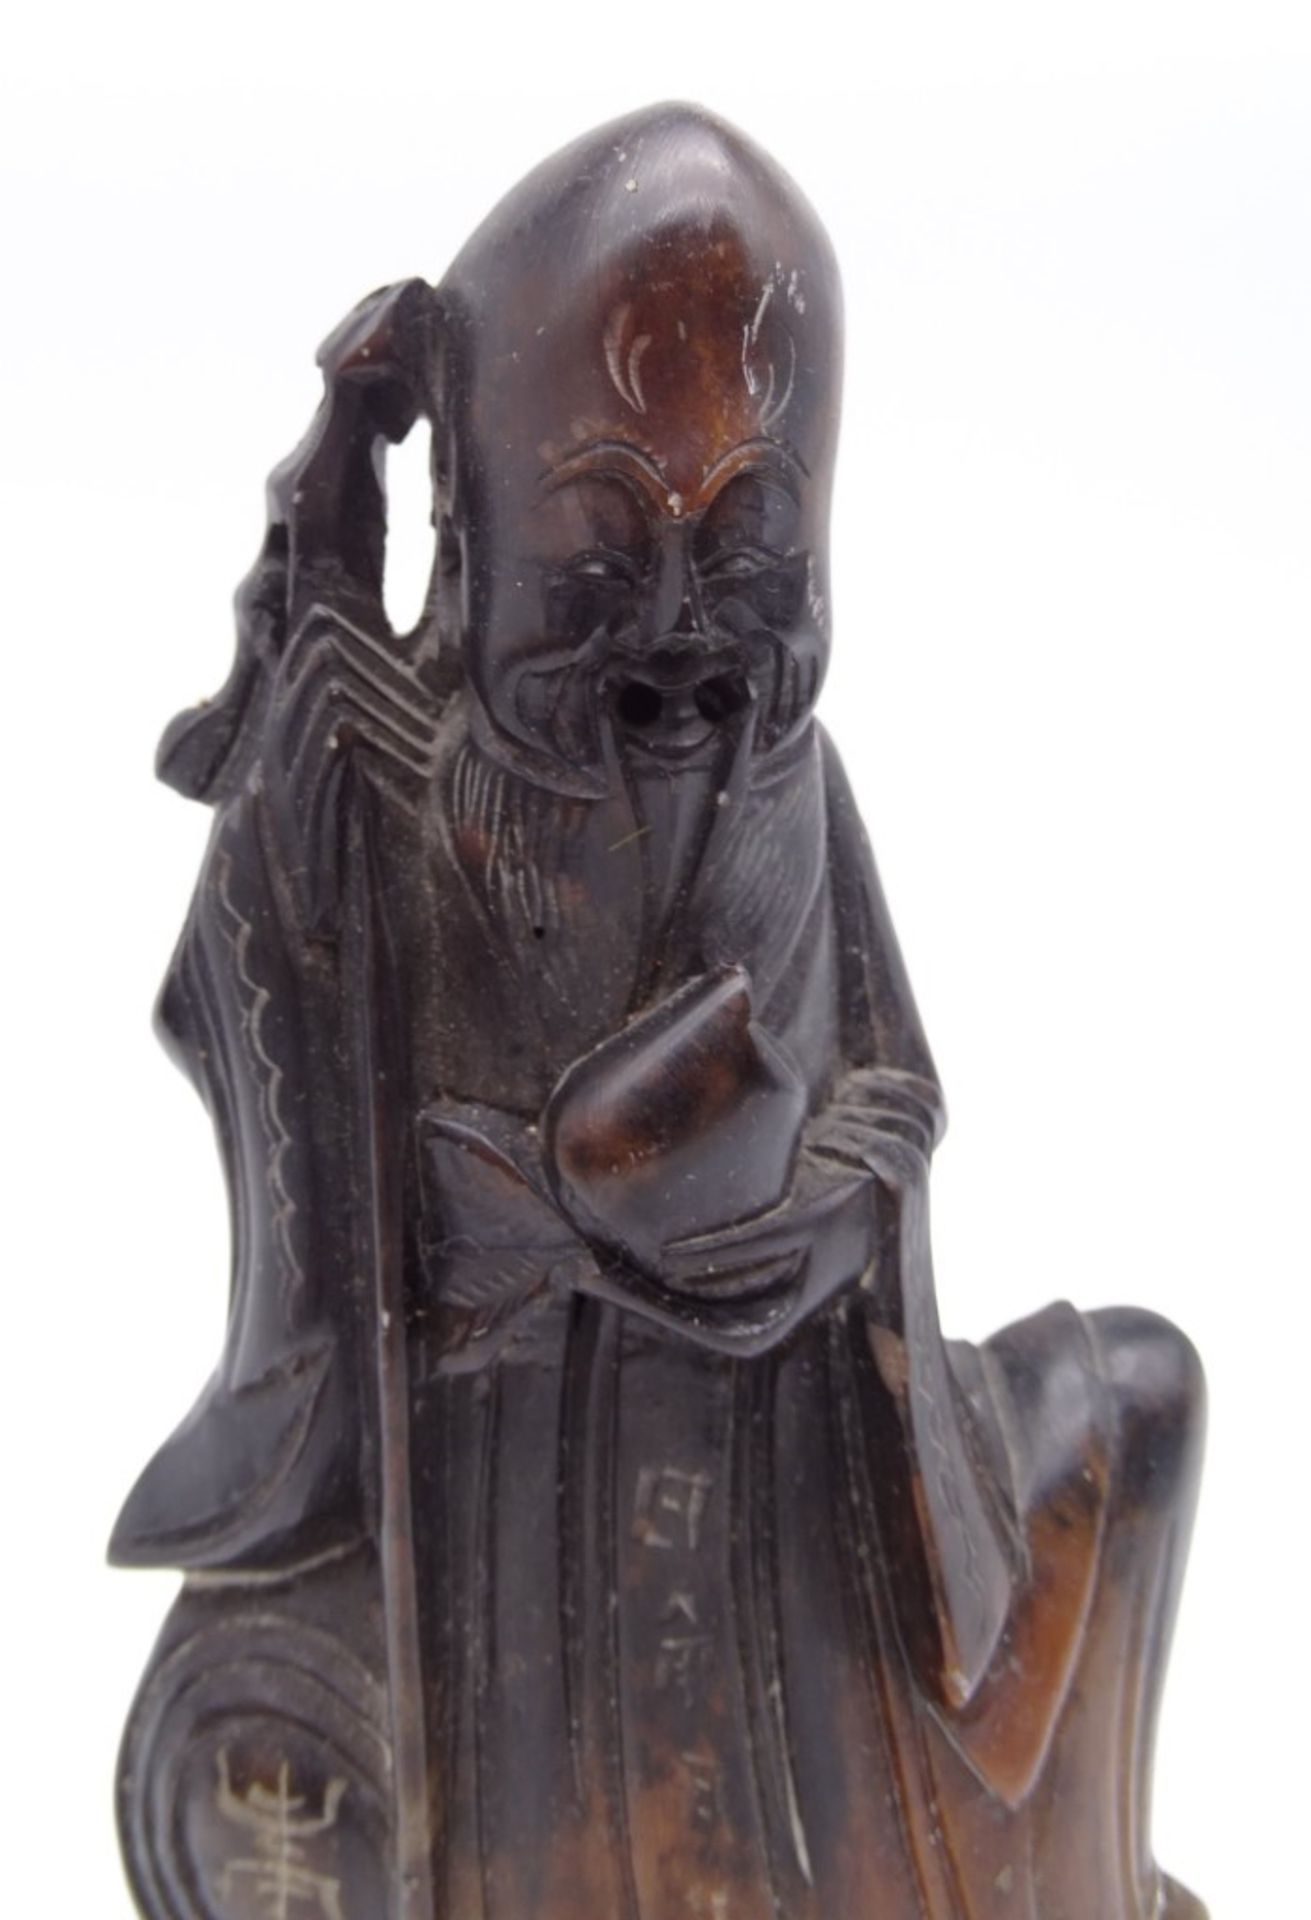 Mönchnfigur auf Steinsockel, geschnitzt, China, H. 17 cm - Bild 3 aus 8